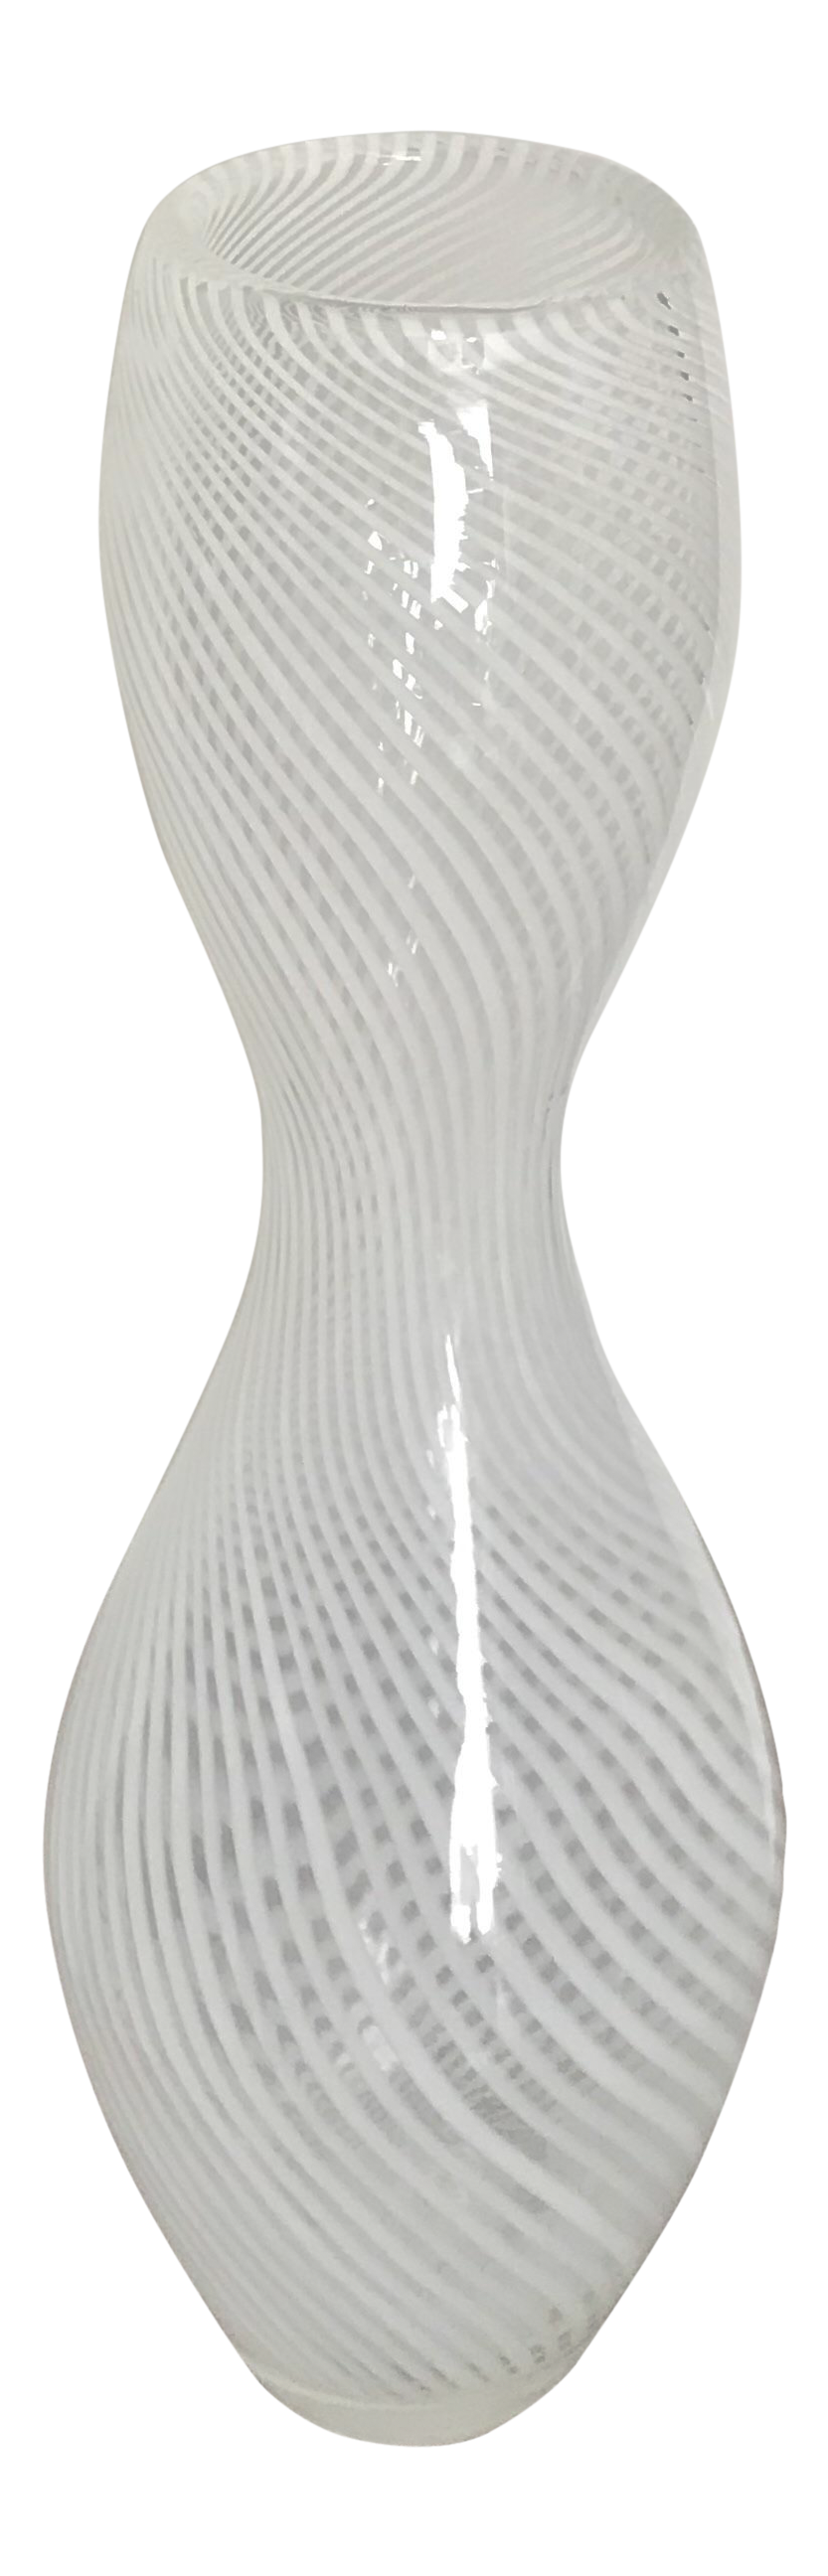 Extra Large White Swirl Glass Vase